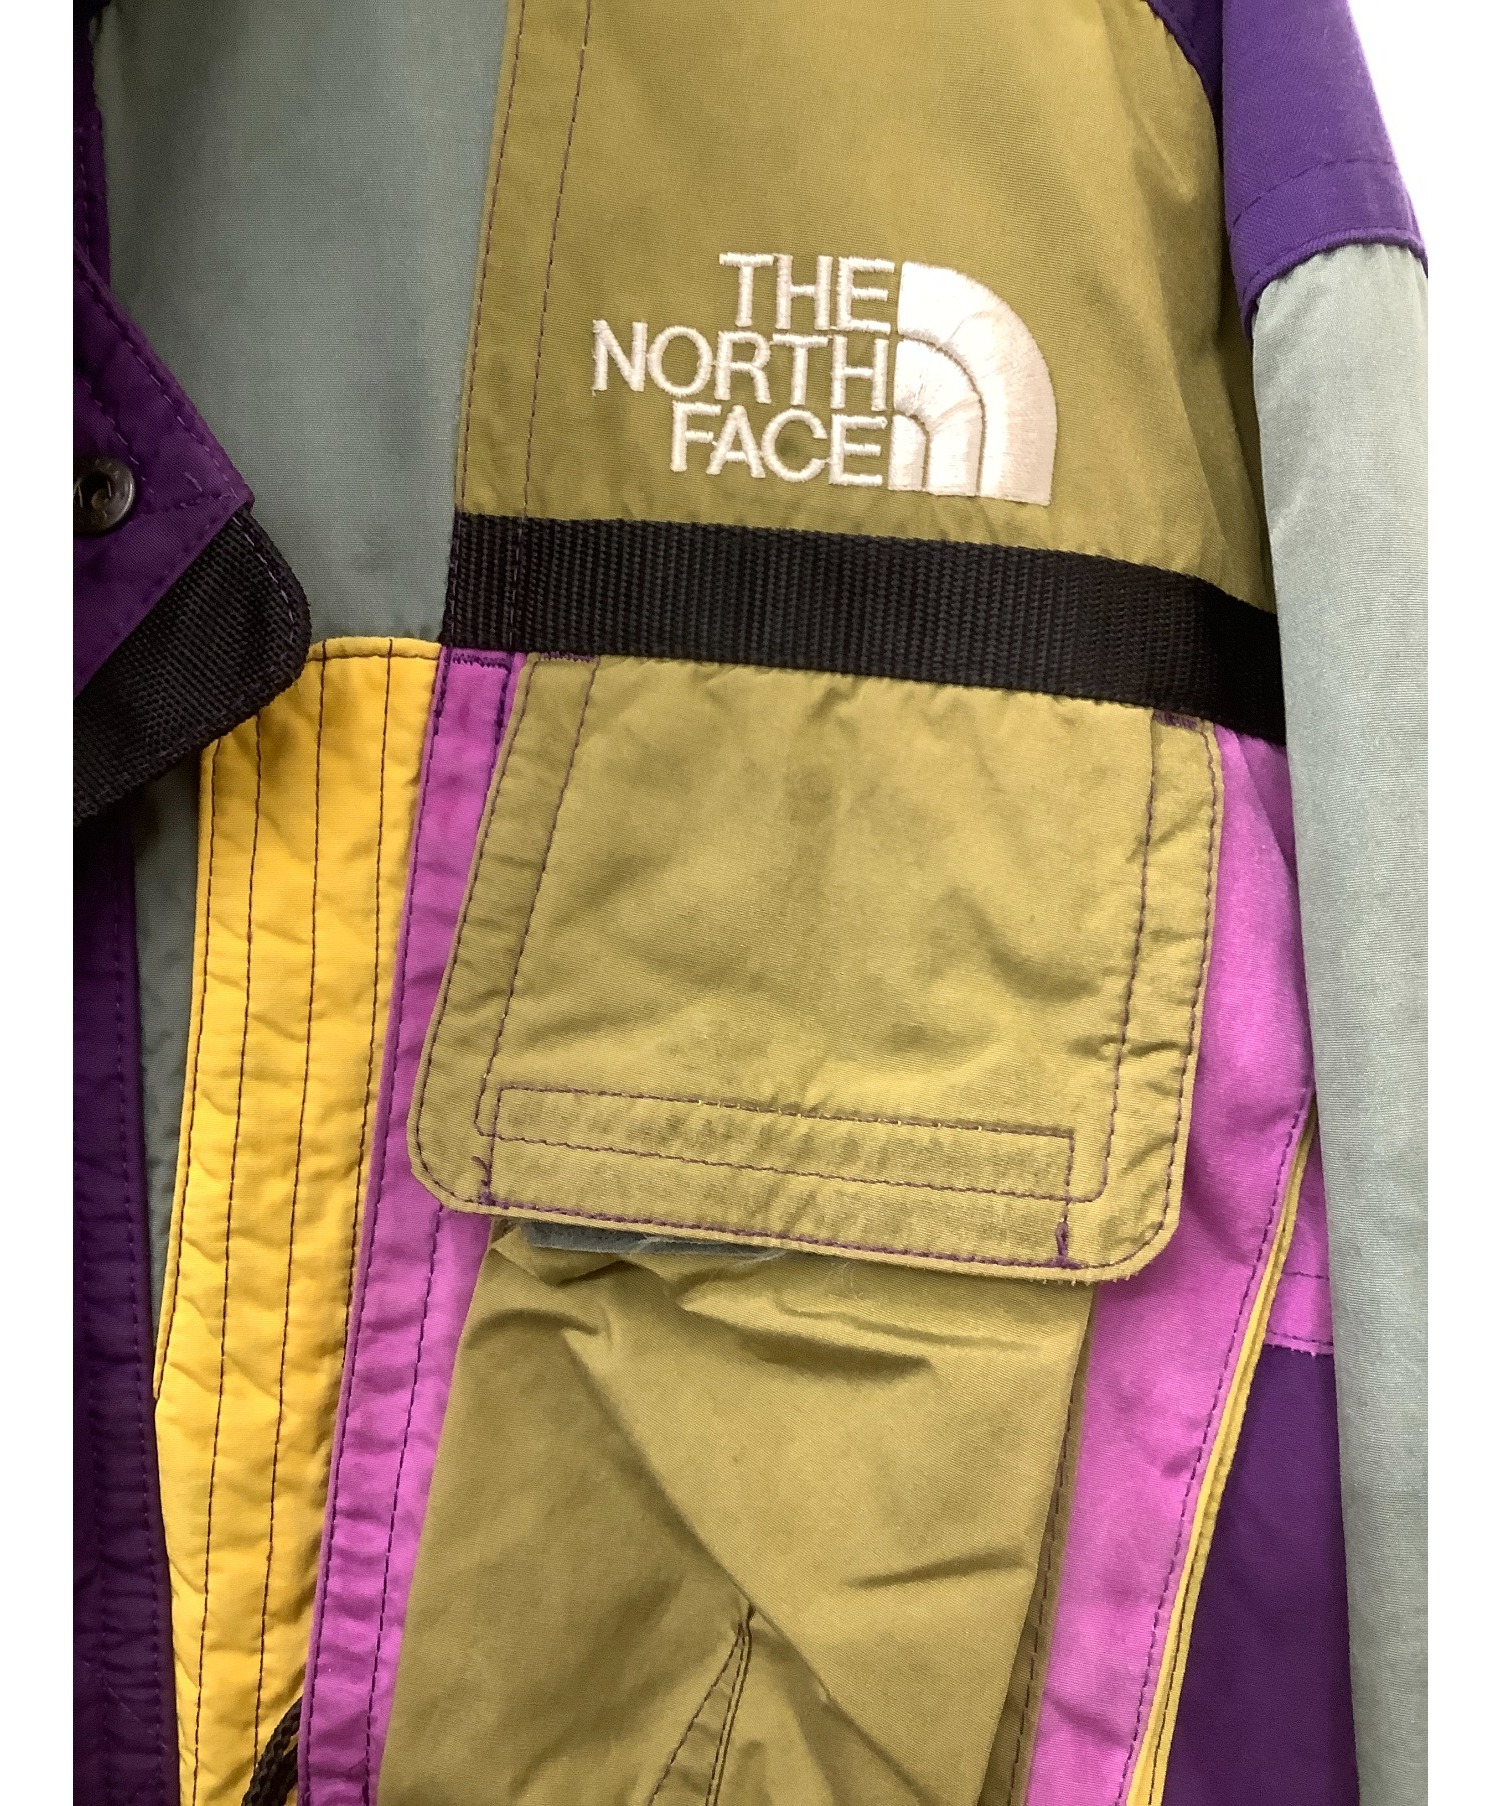 THE NORTH FACE (ザノースフェイス) 90s スキーウェアジャケット パープル×イエロー サイズ:M